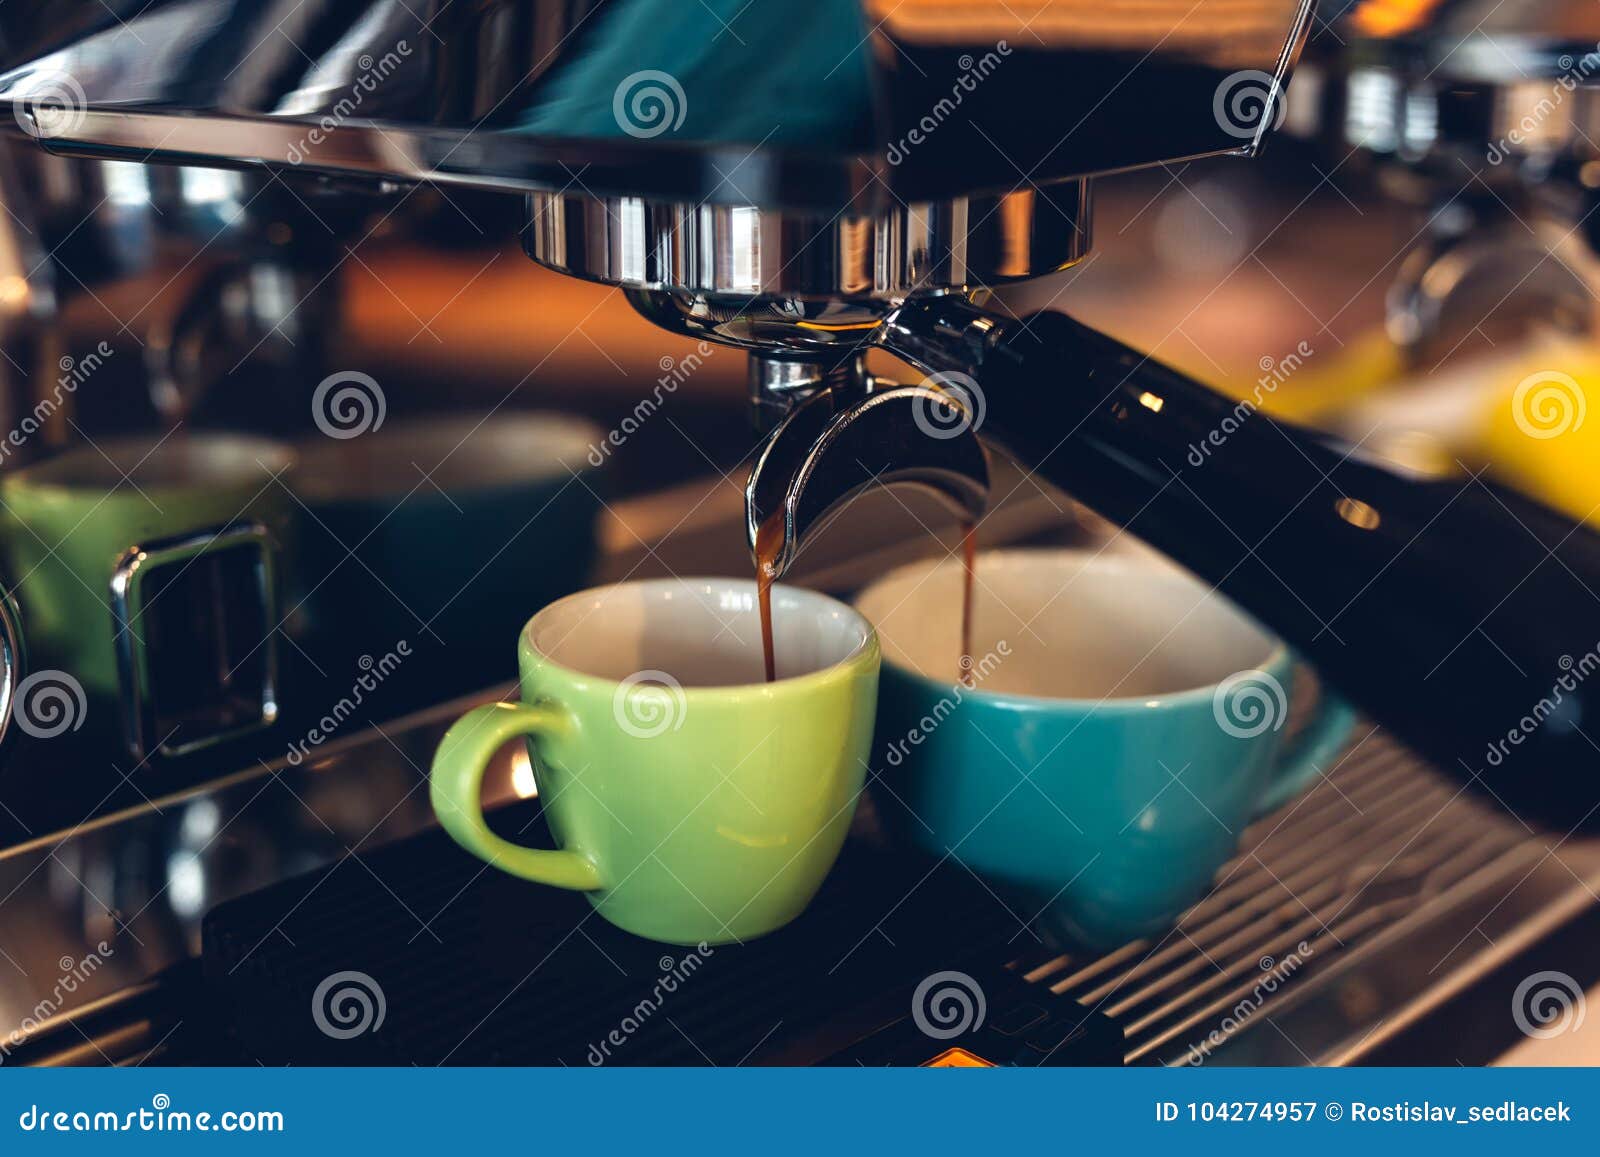 coffee machine preparing espresso and pouring into colored cups